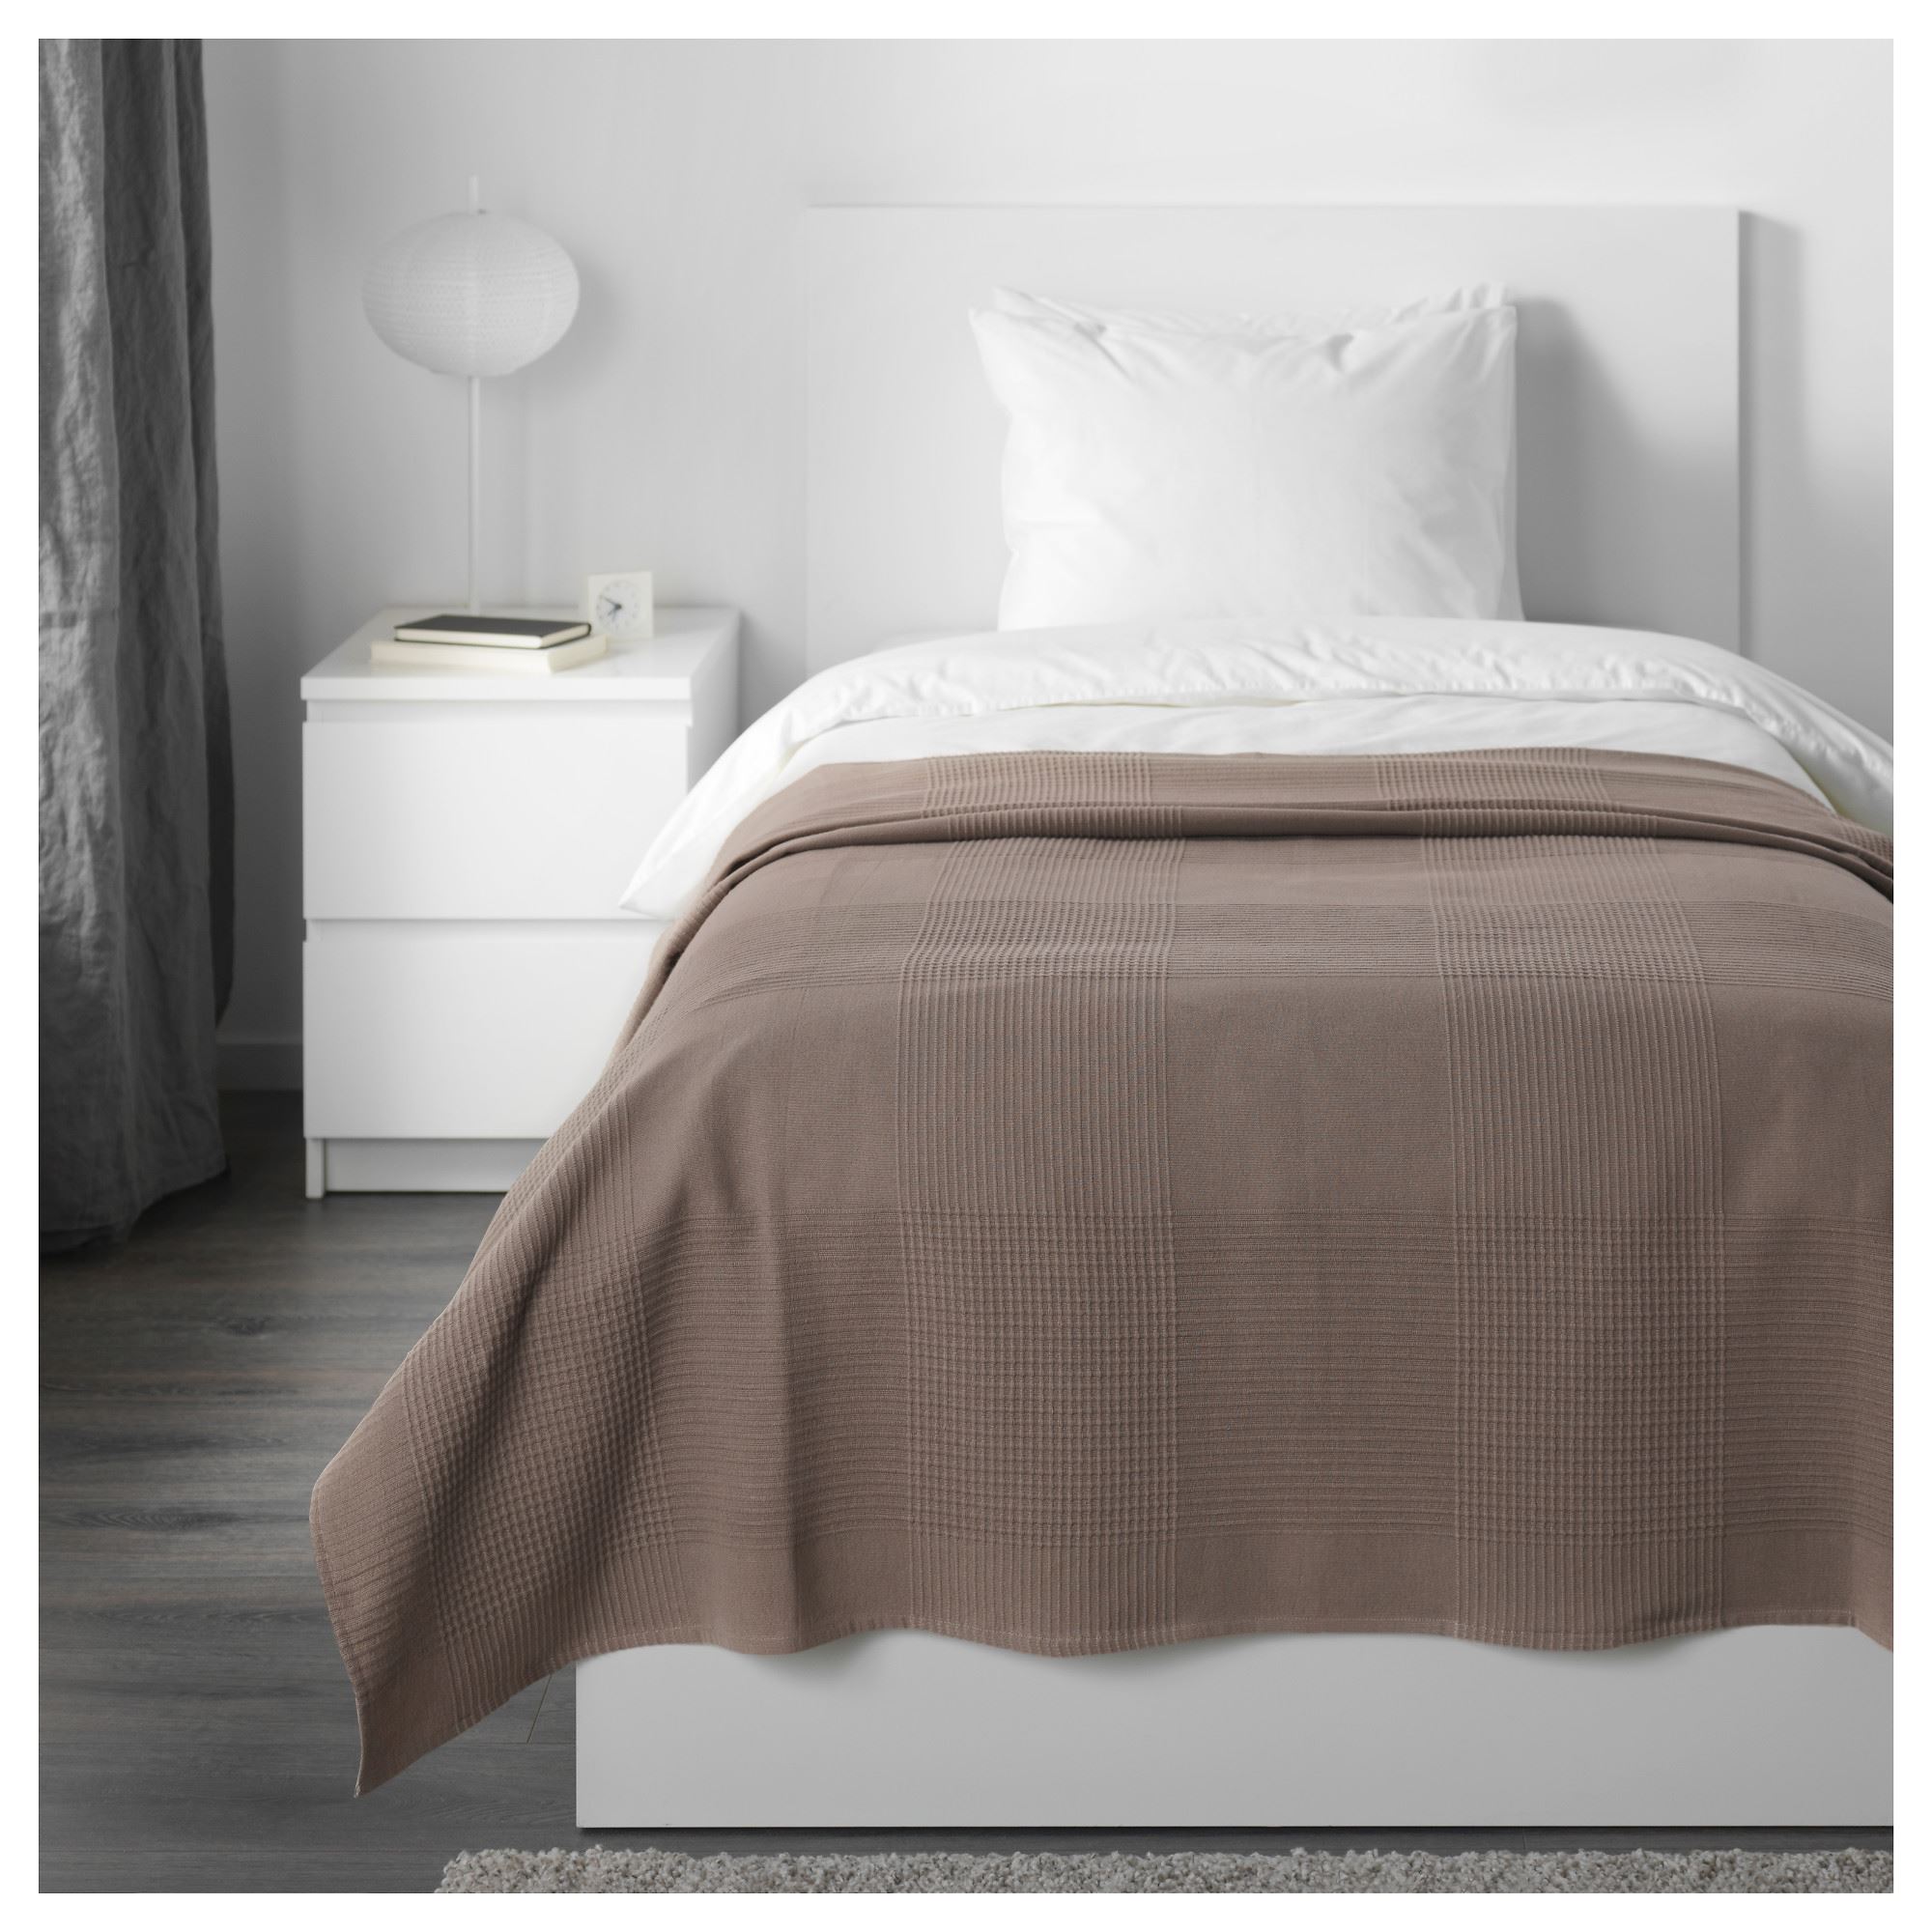 INDIRA tek kişilik yatak örtüsü, açık kahverengi, 150x250 cm